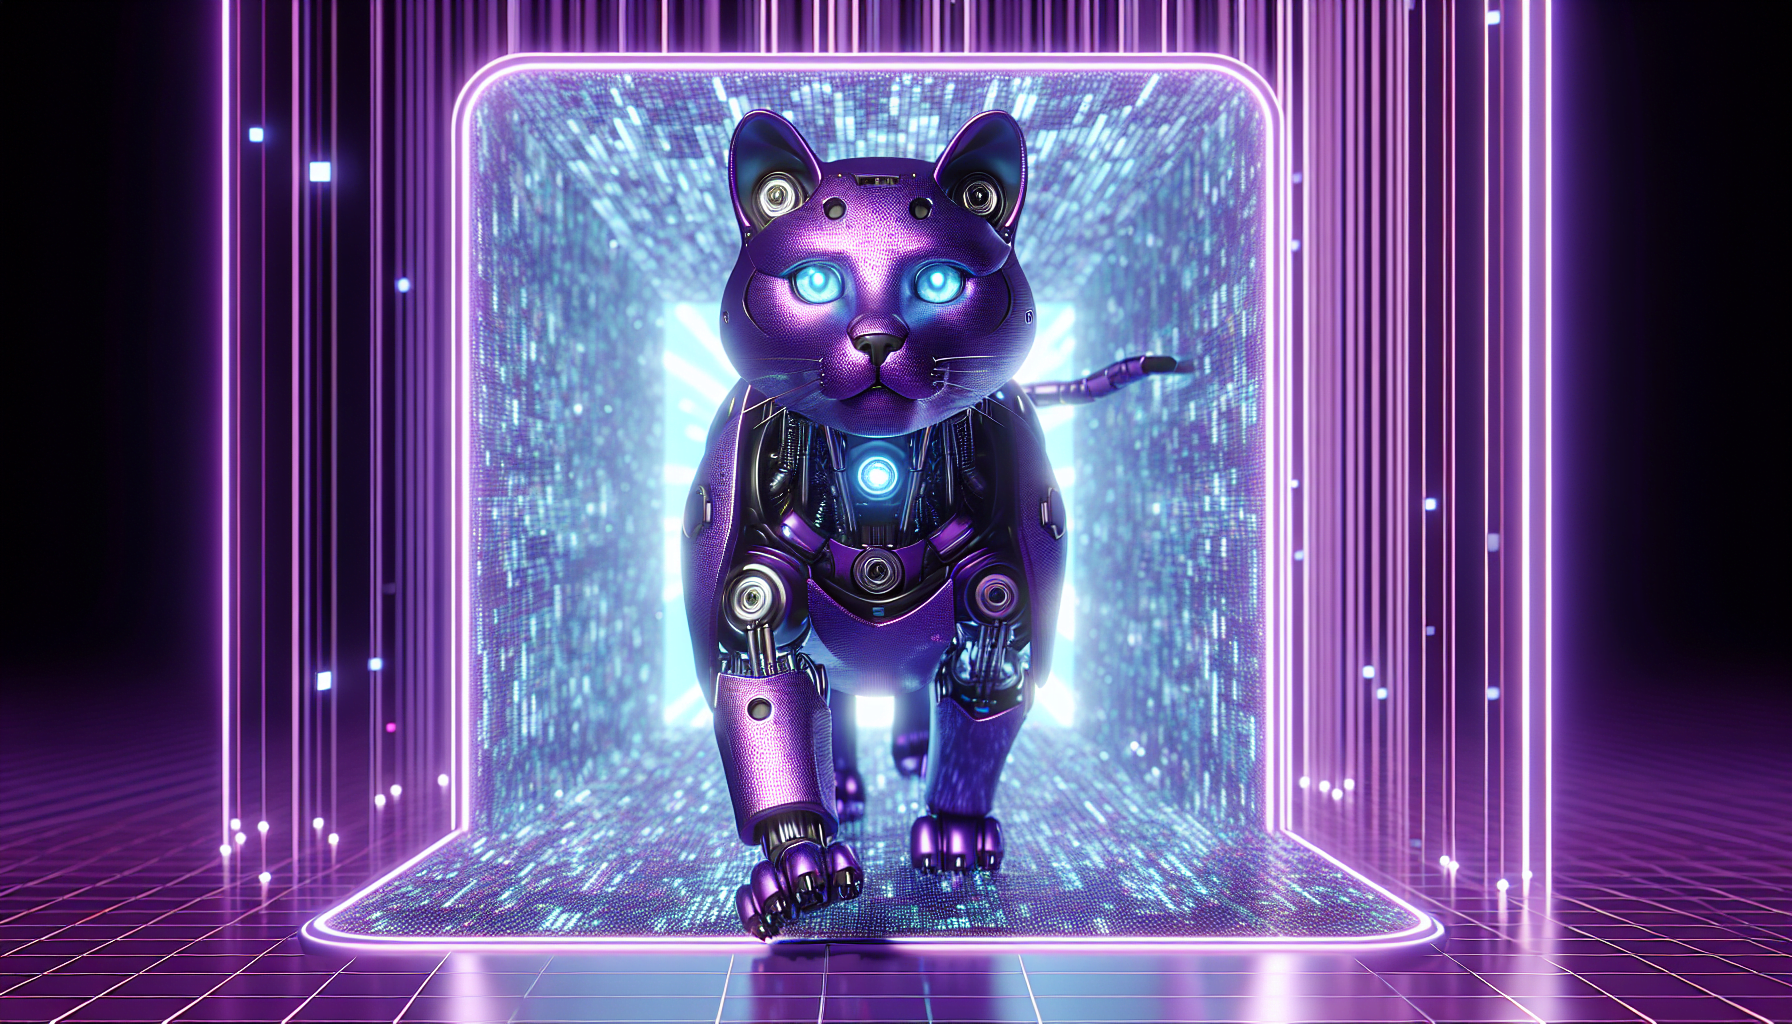 chat robot realiste theme violet sortant portail numerique design unique lueur rayonnante pixelisee yeux azures cadre futuriste avance